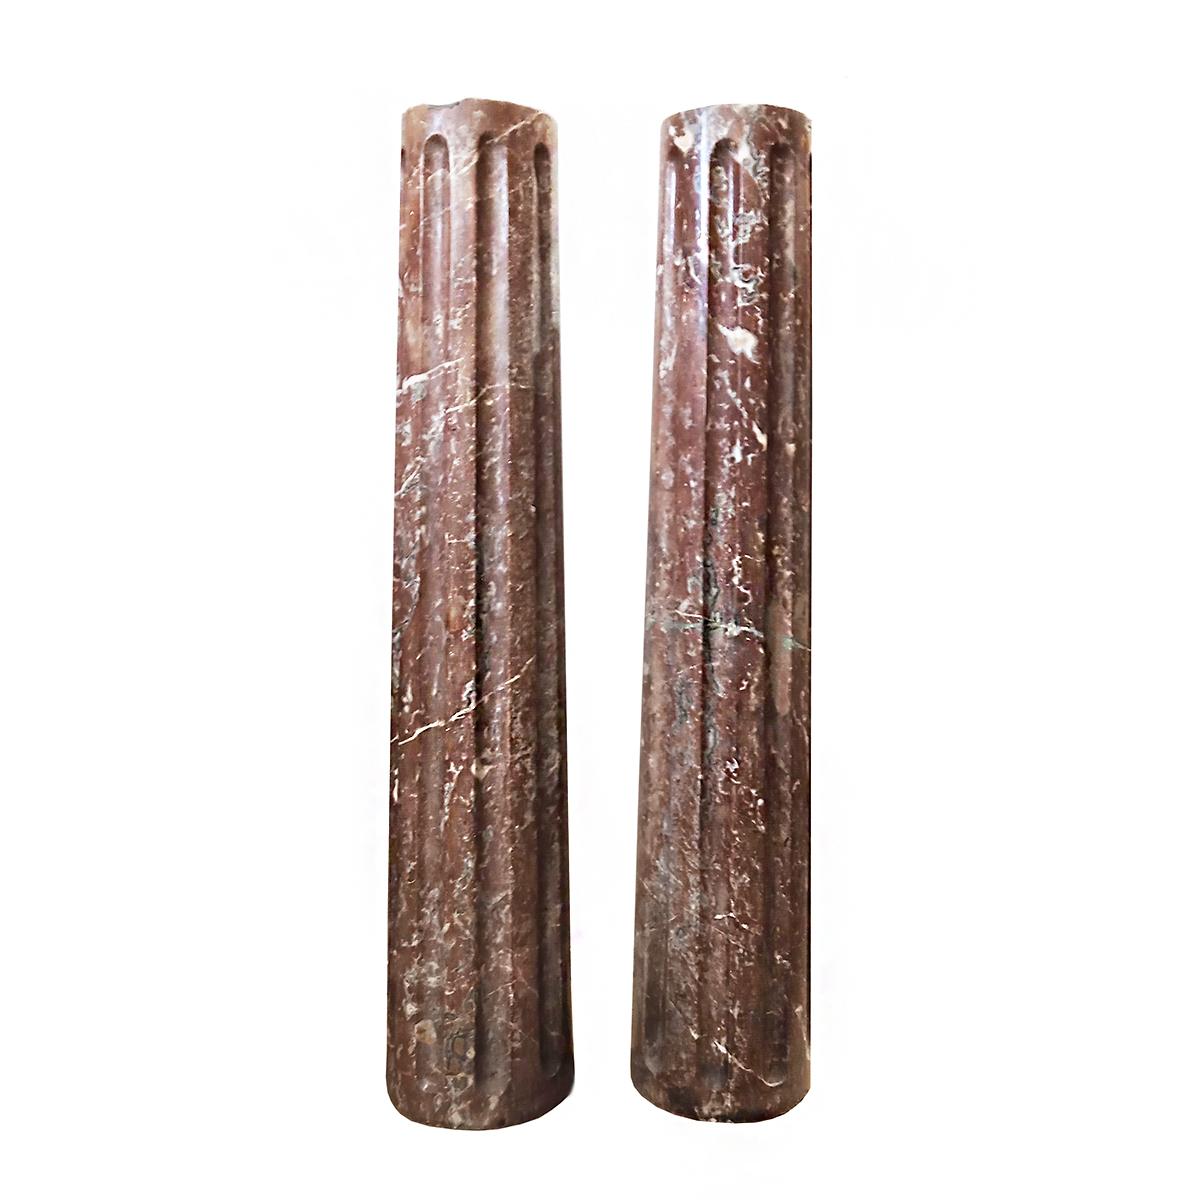 Zwei kannelierte Säulen, handgeschnitzt in rotem Marmor, um 1850.
Maße: 28.5 Zoll hoch.
Ideal als Sockel, Konsolenfuß oder als dekoratives architektonisches Element. Preis und Verkauf separat.